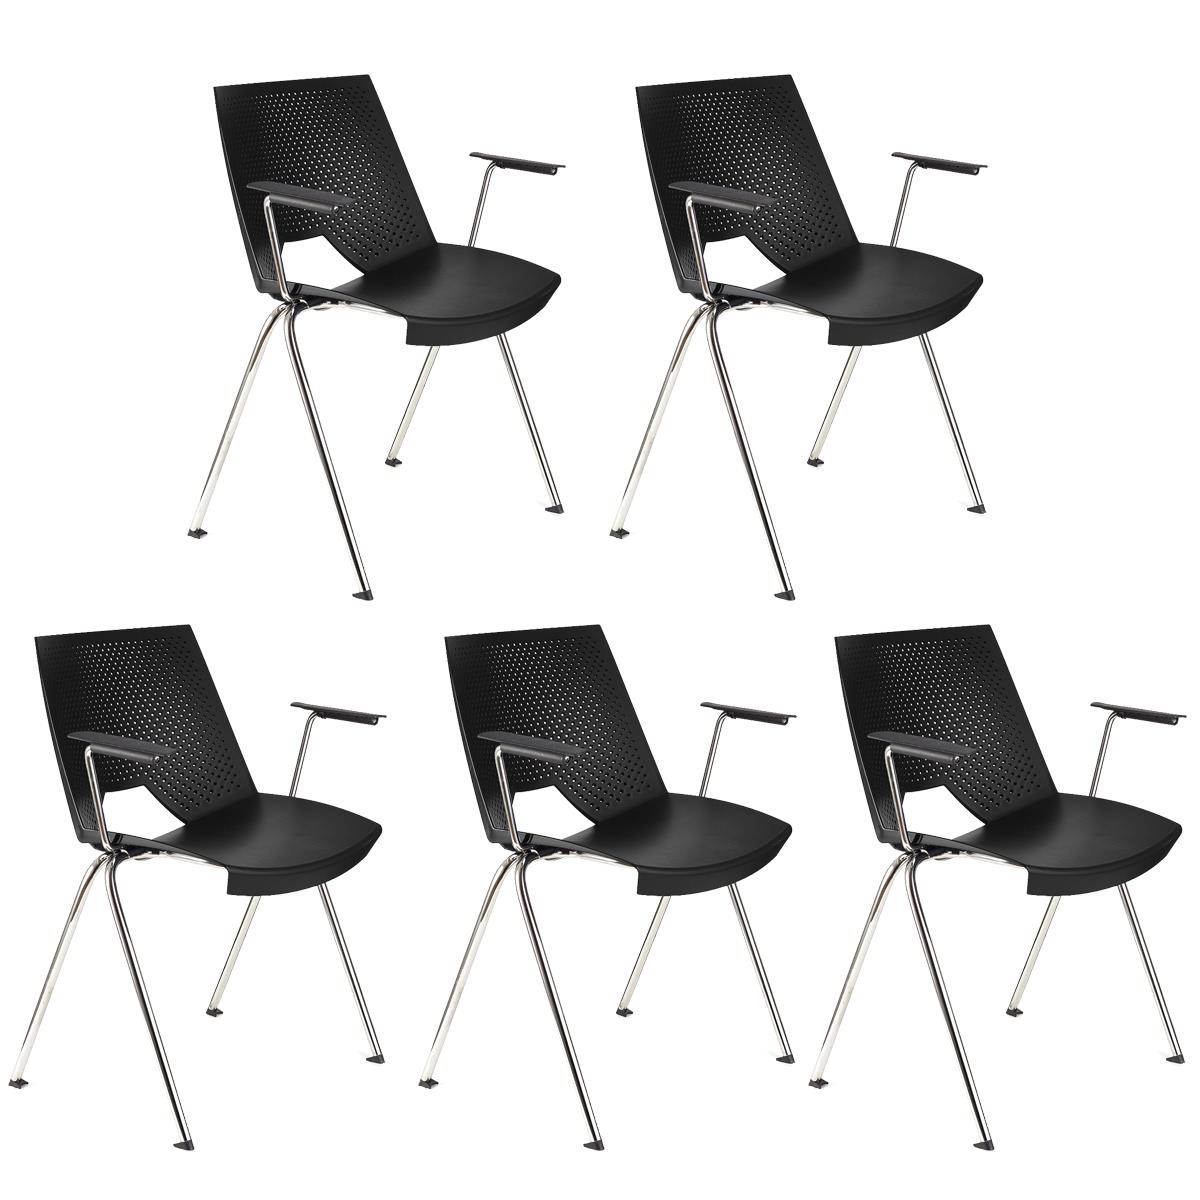 Lote 5 Cadeiras de Visita ENZO COM BRAÇOS, Confortável e Empilhável, Cor Preto